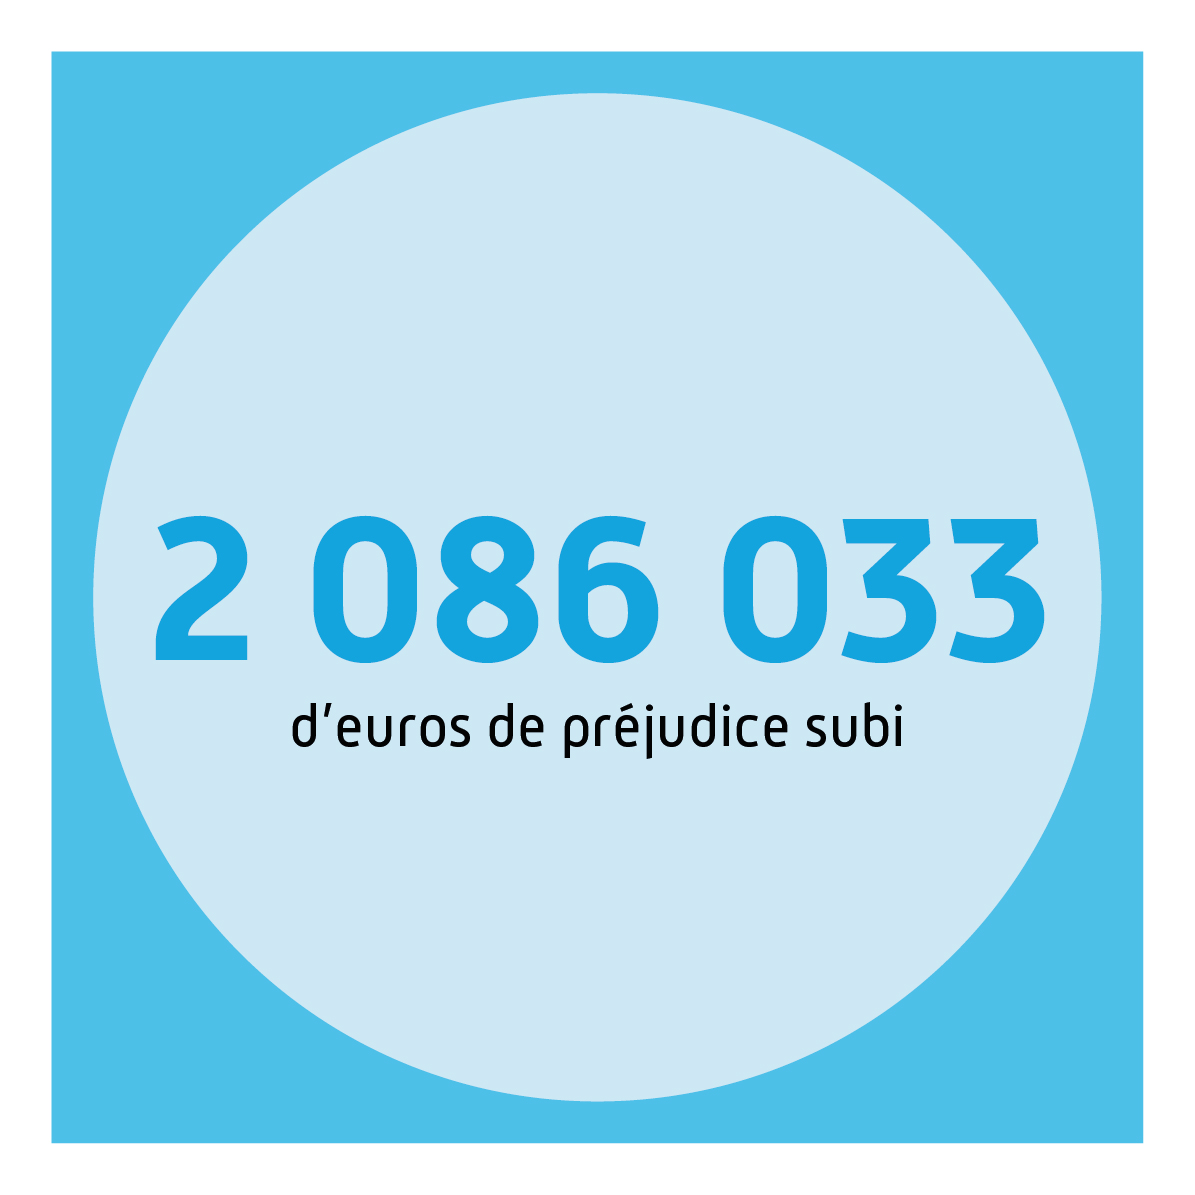 2 086 033 d'euros de préjudice subi.